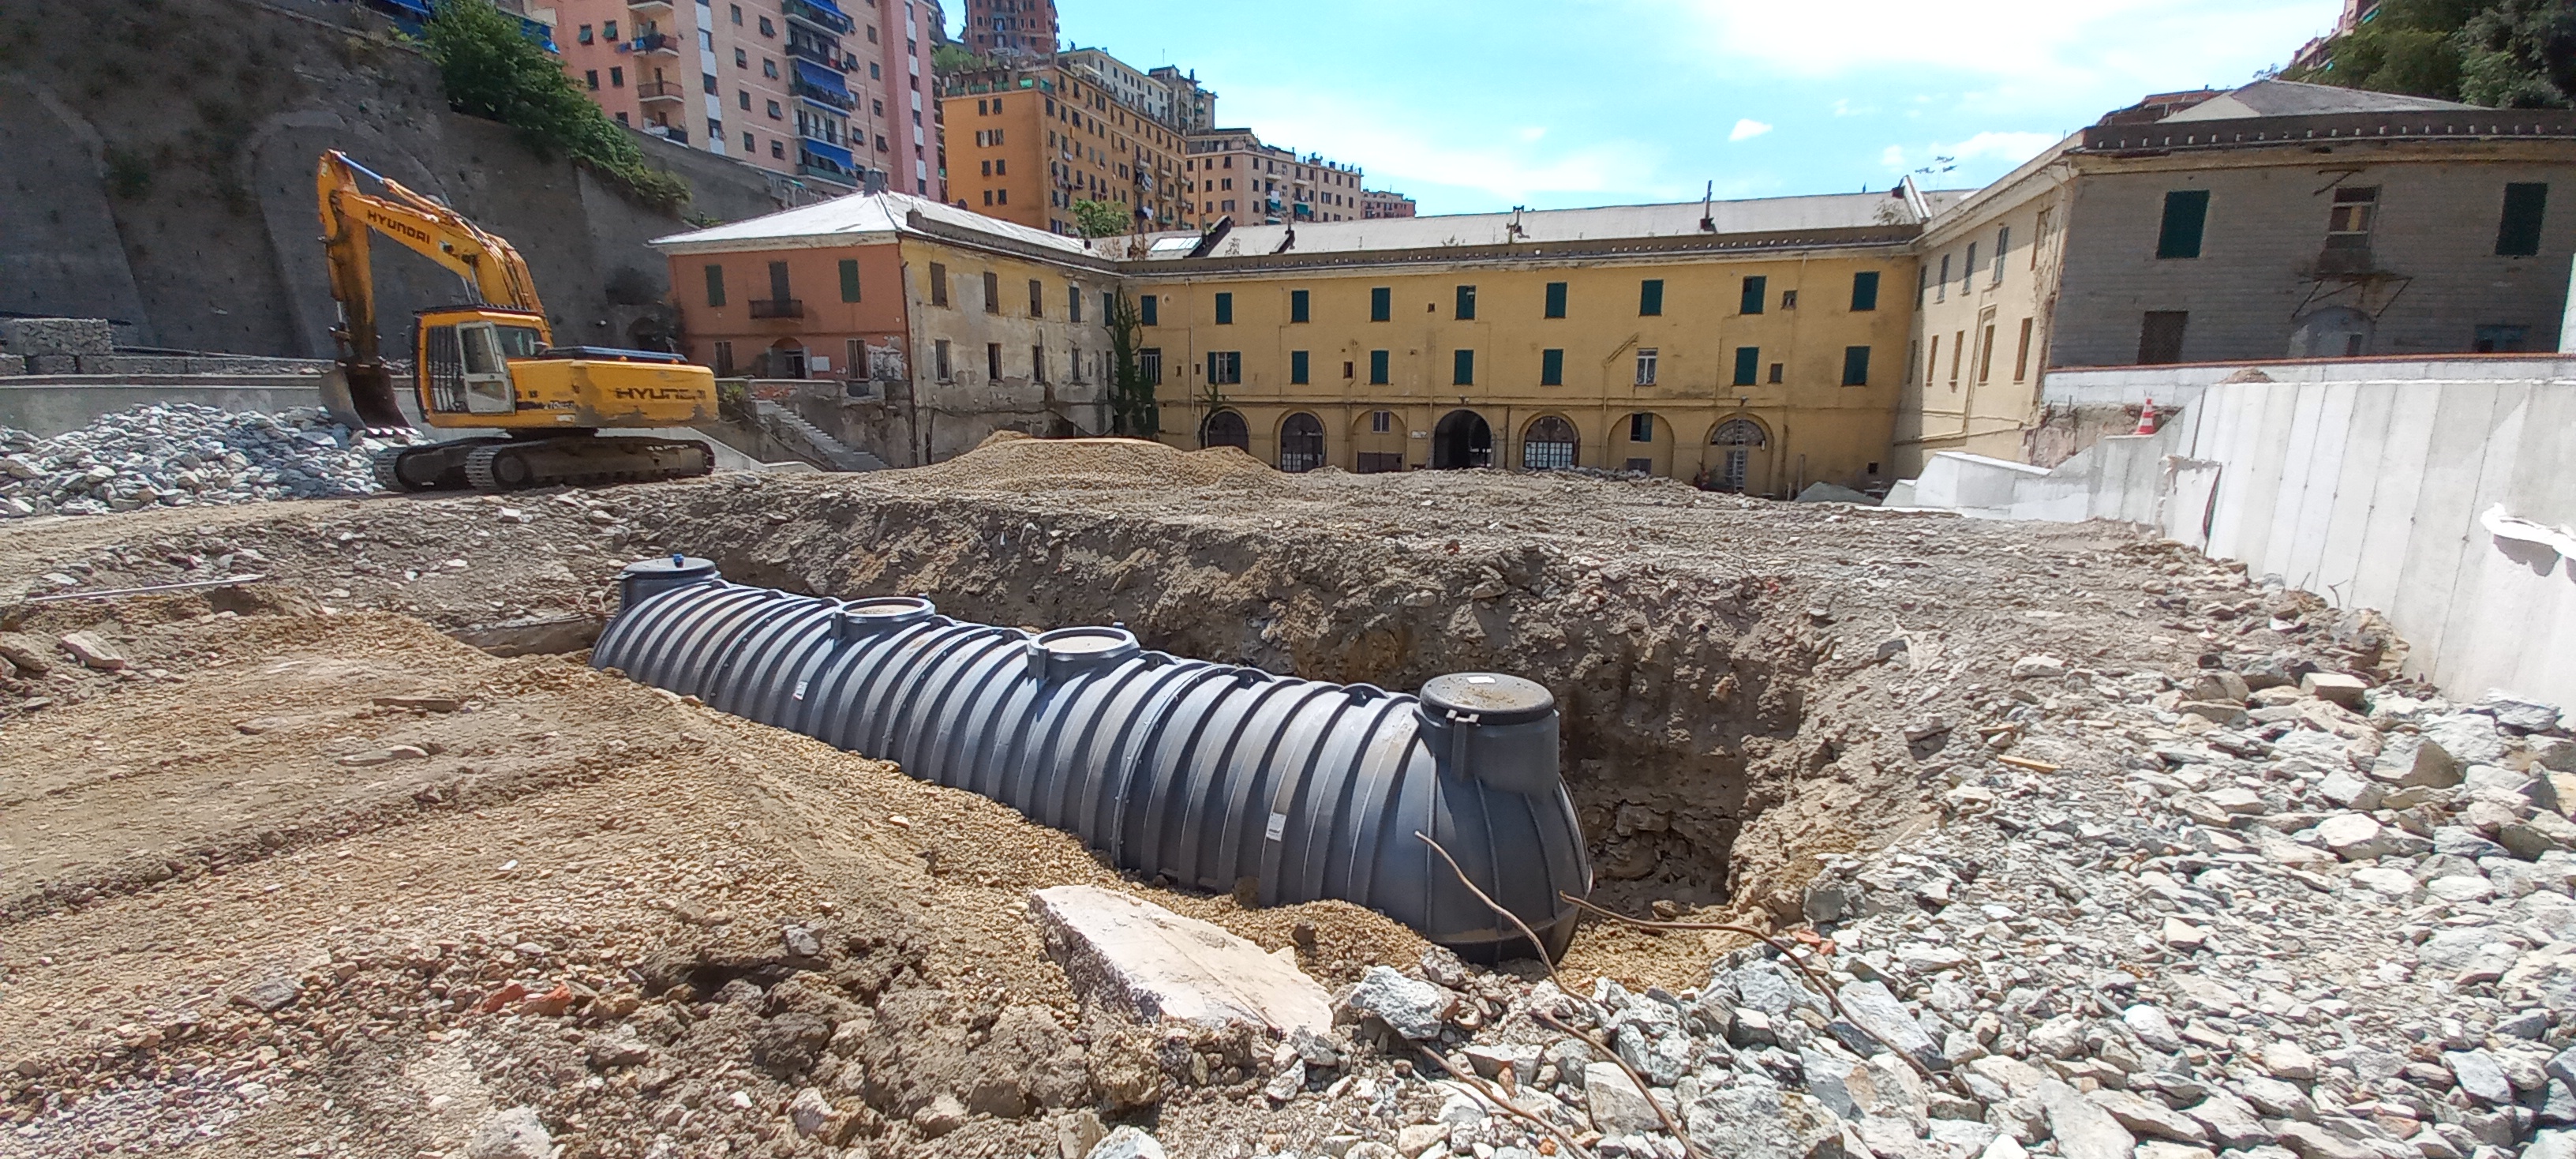 Underground water retention basin, Gavoglio